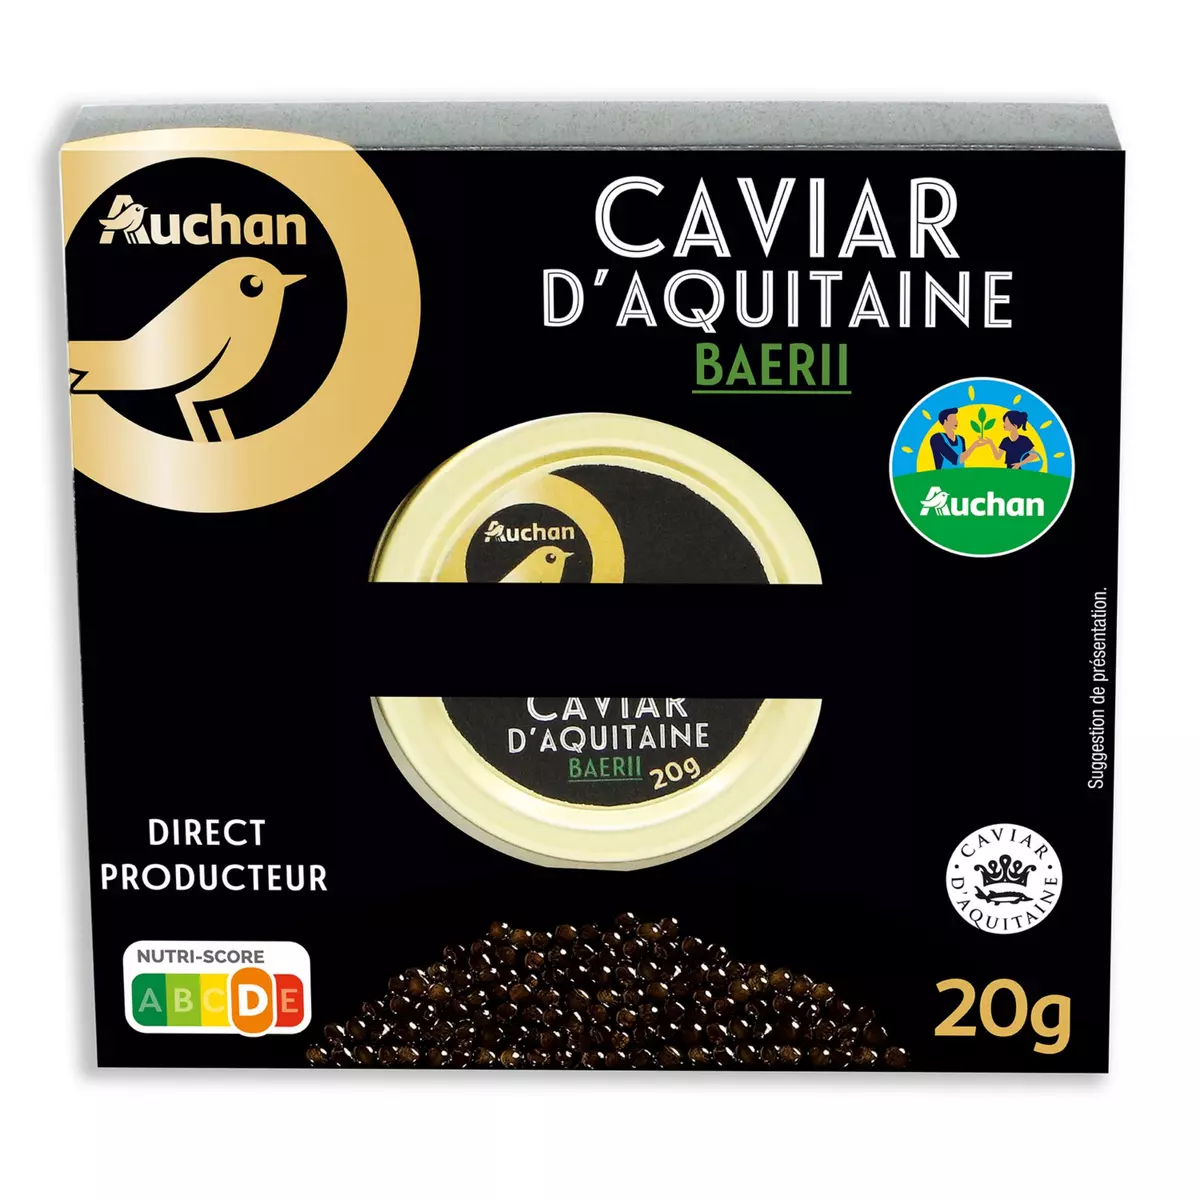 AUCHAN LE TRAITEUR Caviar d'Aquitaine baerii pêche automne 20g